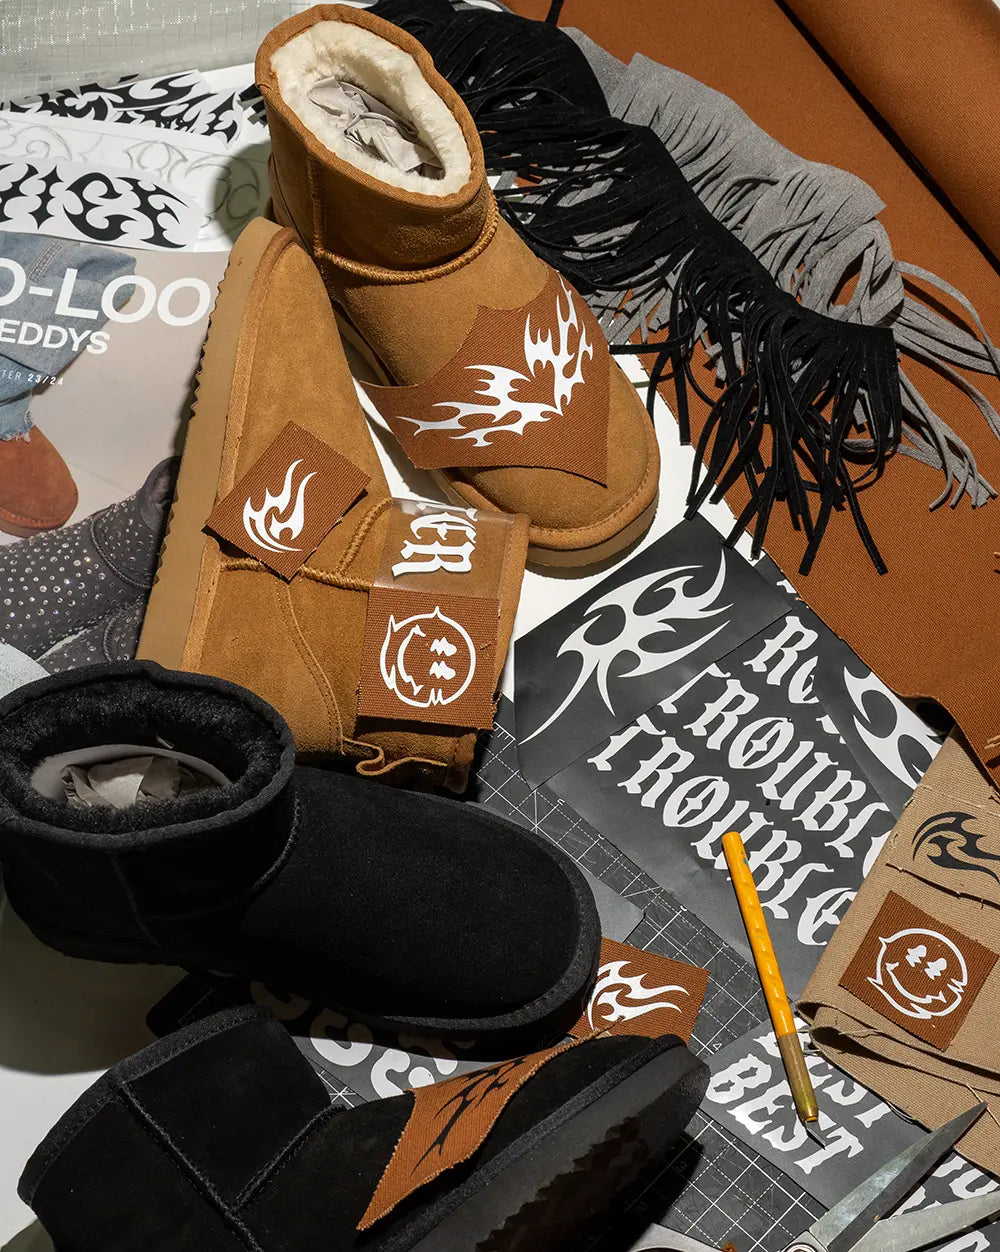 Grafiche per scarpe personalizzate custom Seddys, pelle, camoscio